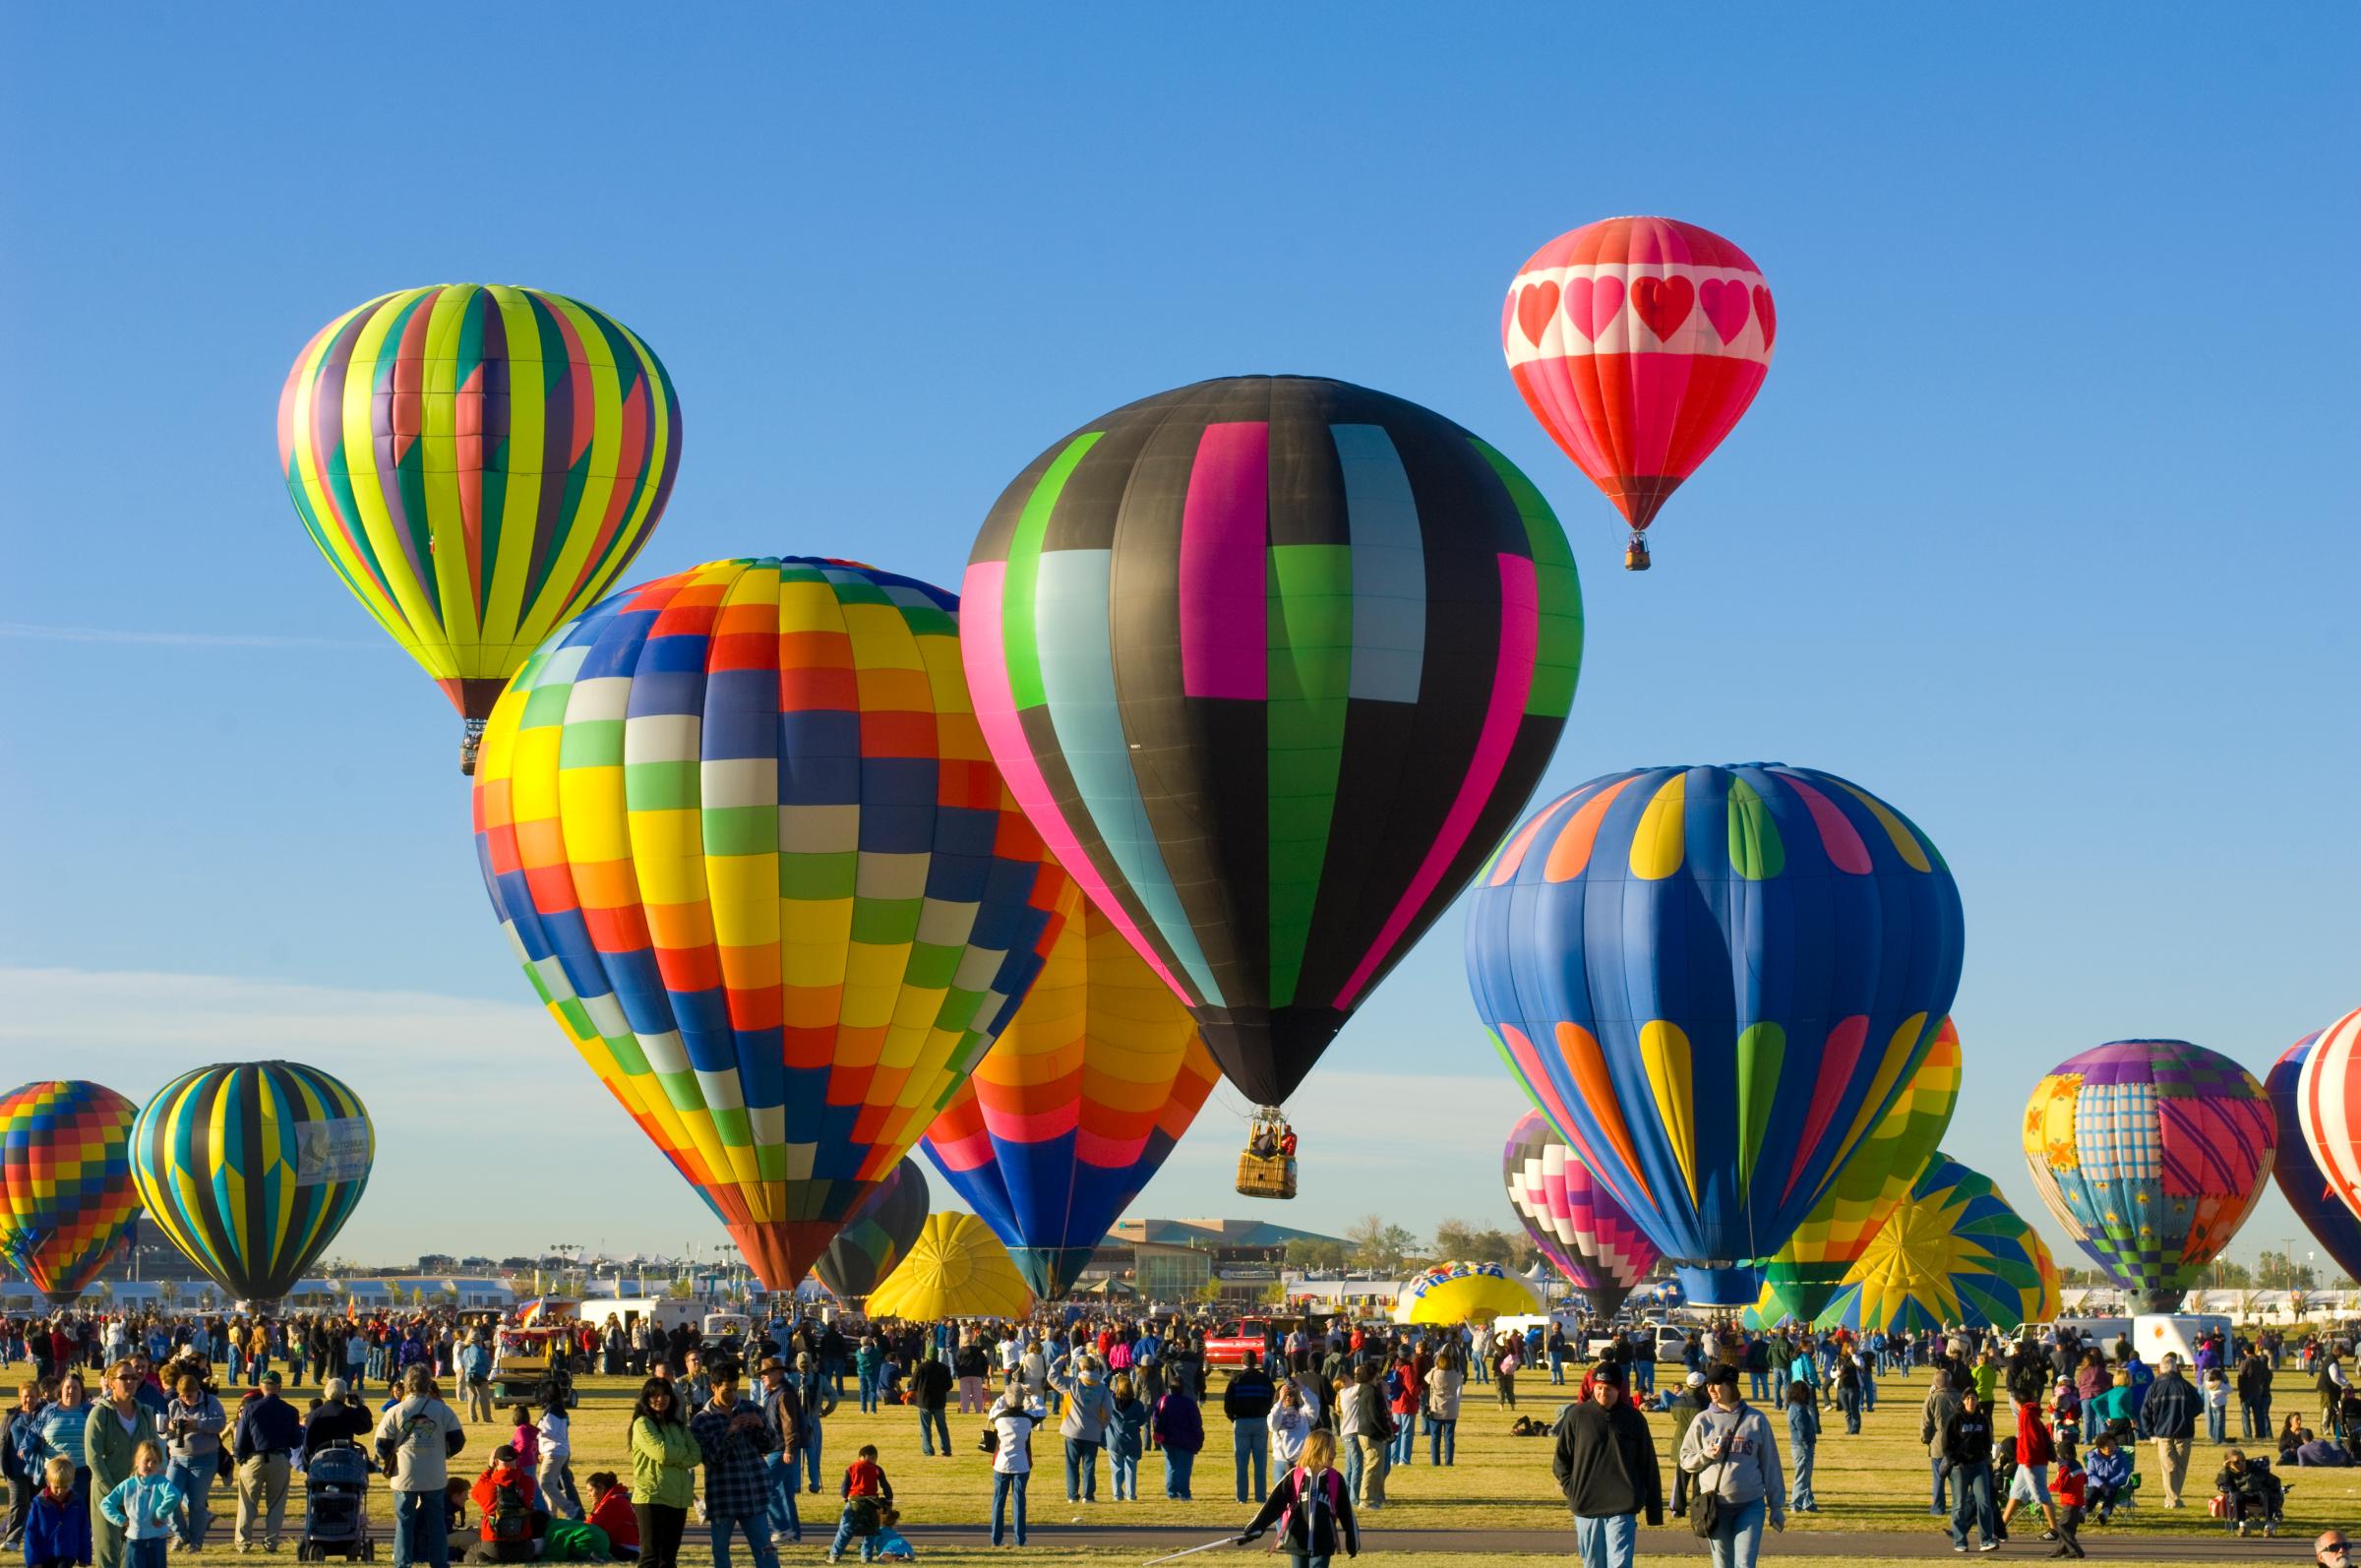 Annual Albuquerque International Hot Air Balloon Fiesta, Albuquerque, New Mexico.